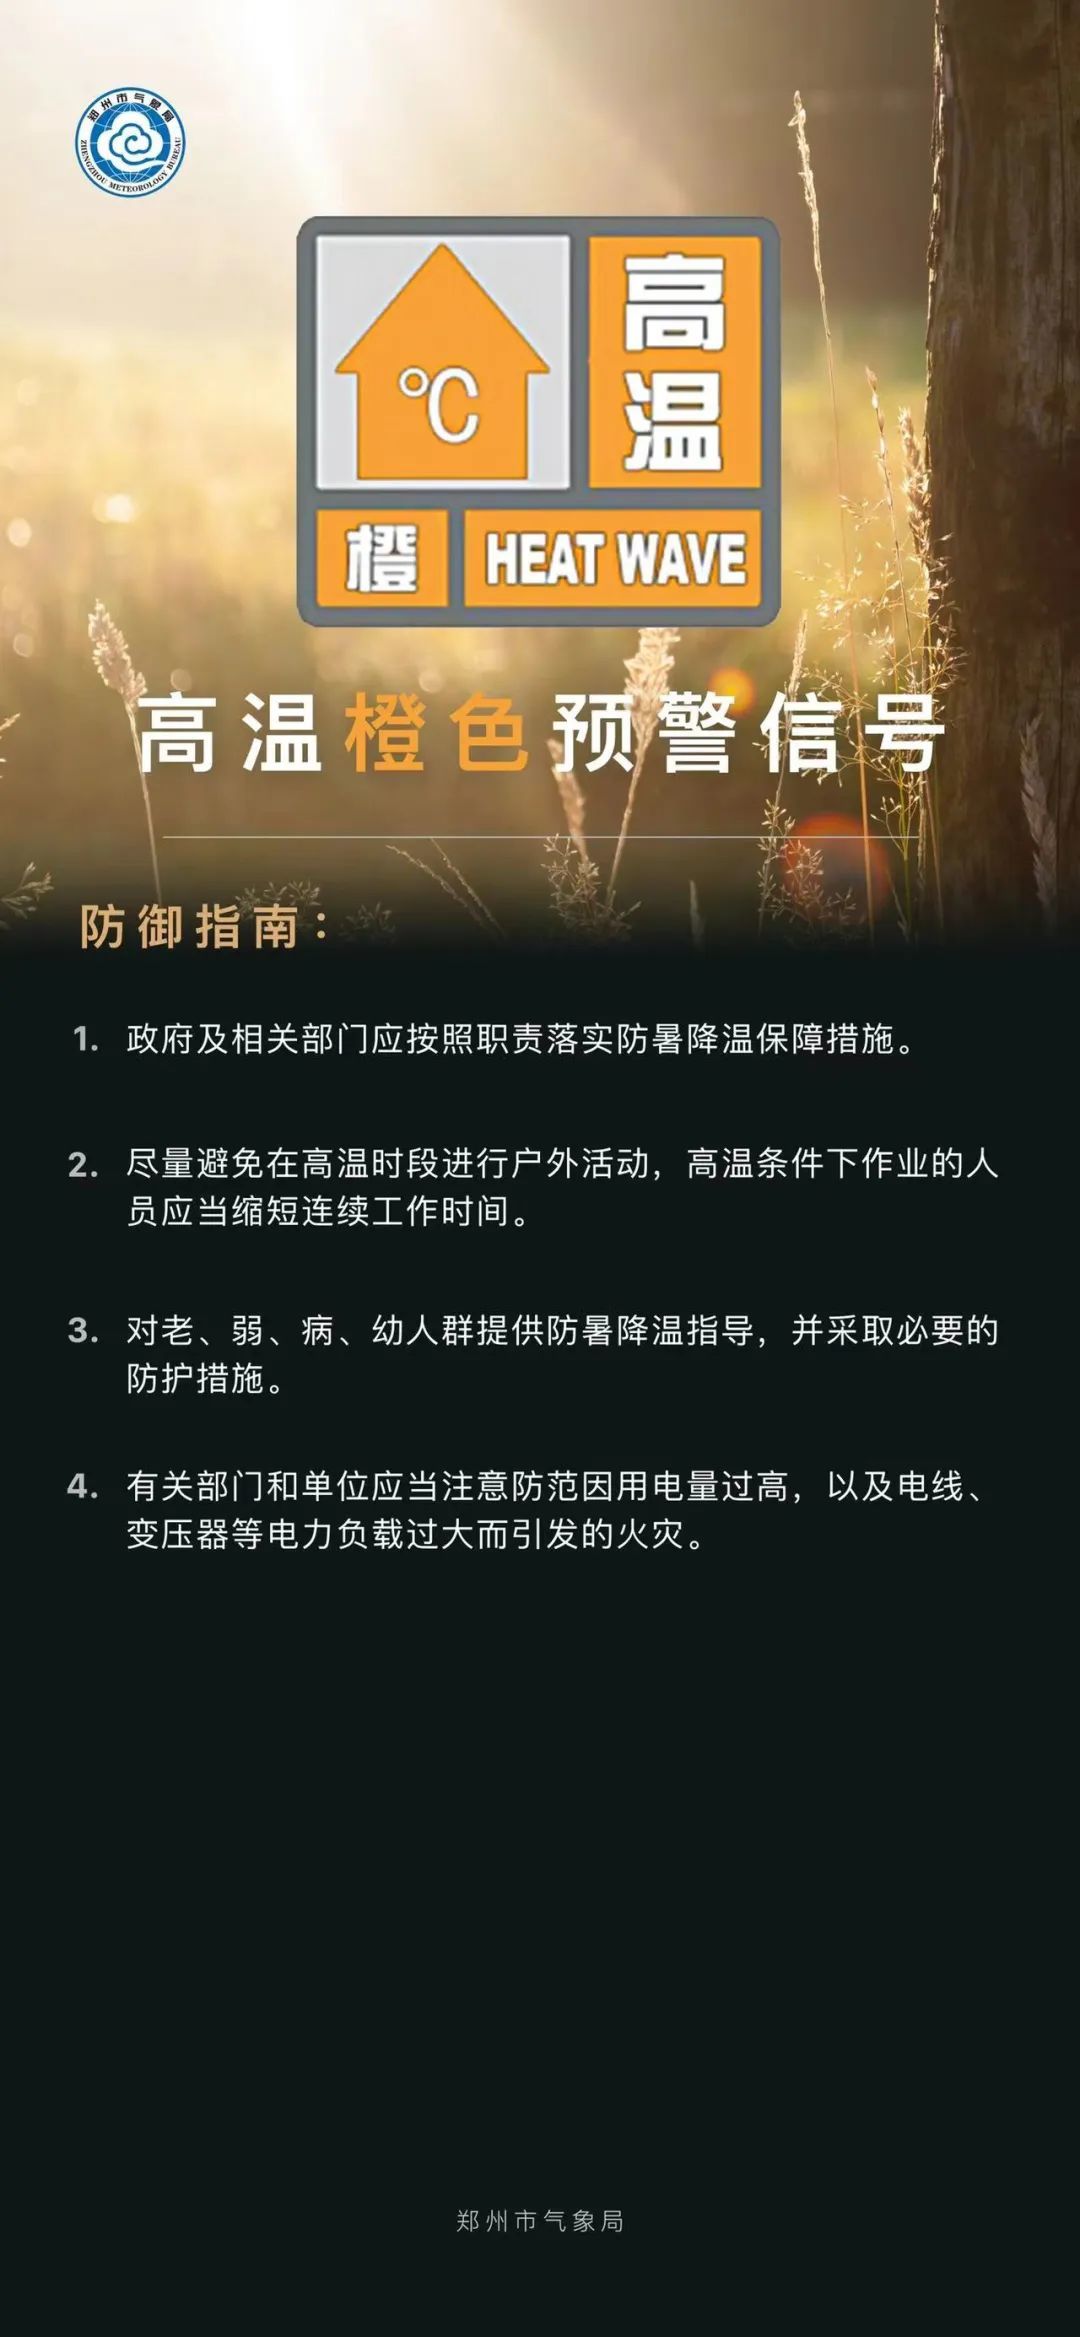 郑州市发布高温橙色预警信号